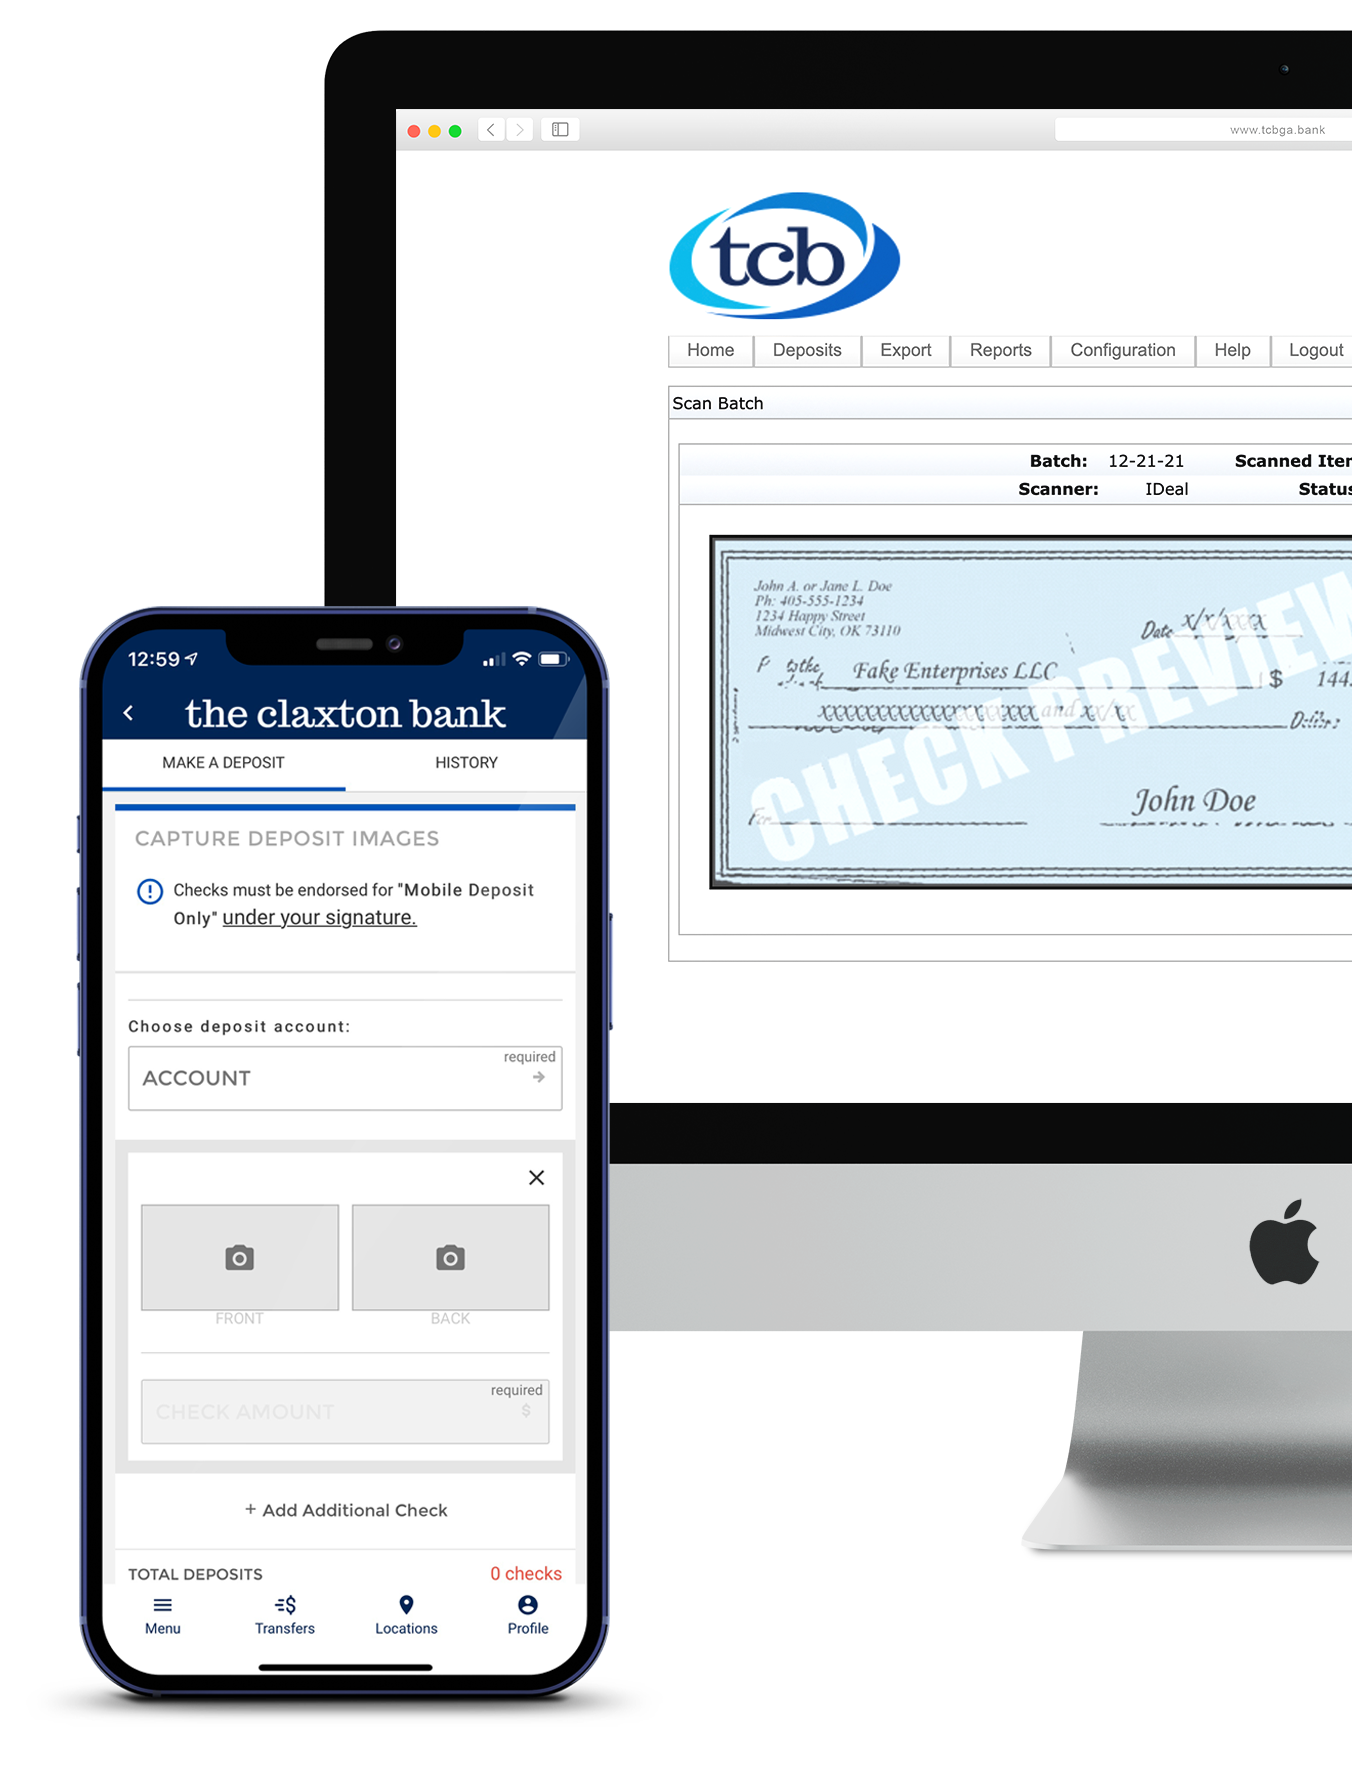 TCB Mobile Depsoit Capture and Merchant Remote Deposit Capture